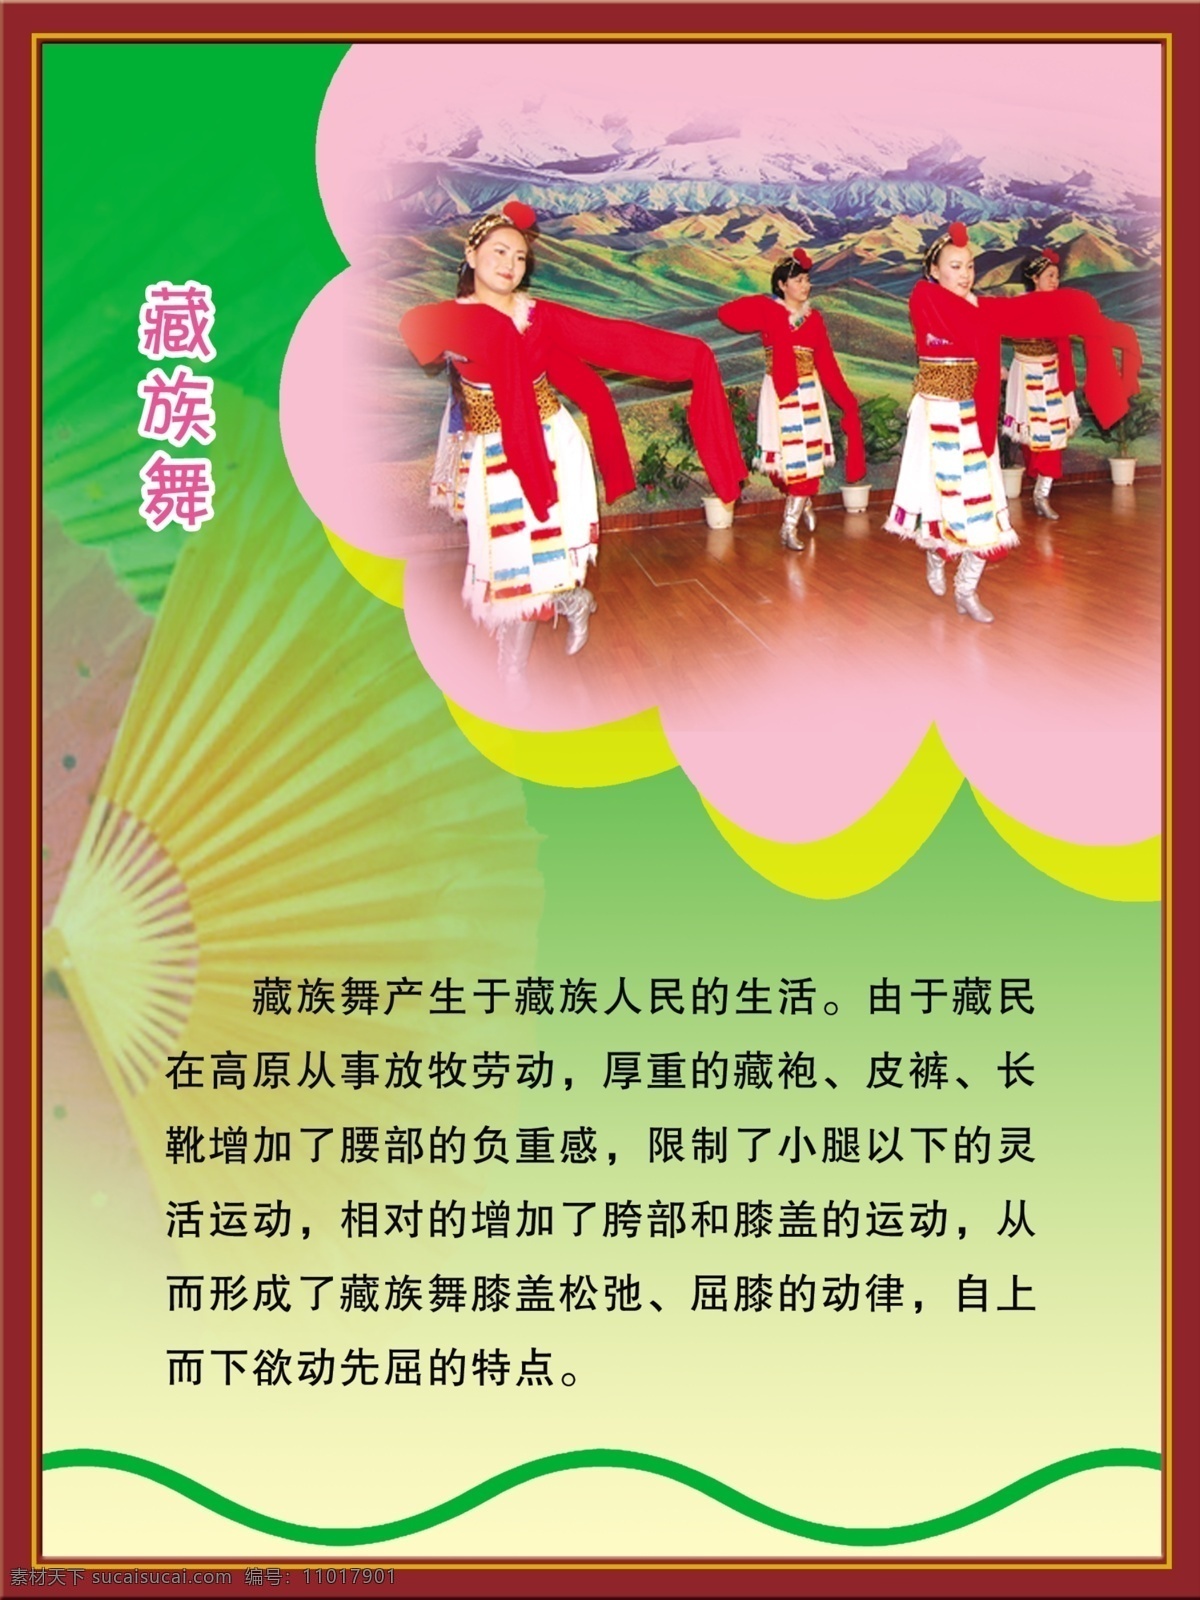 分层文件 广告设计模板 舞蹈 舞蹈宣传 舞蹈展板 源文件 展板 展板模板 藏族舞 舞蹈介绍 起源 psd源文件